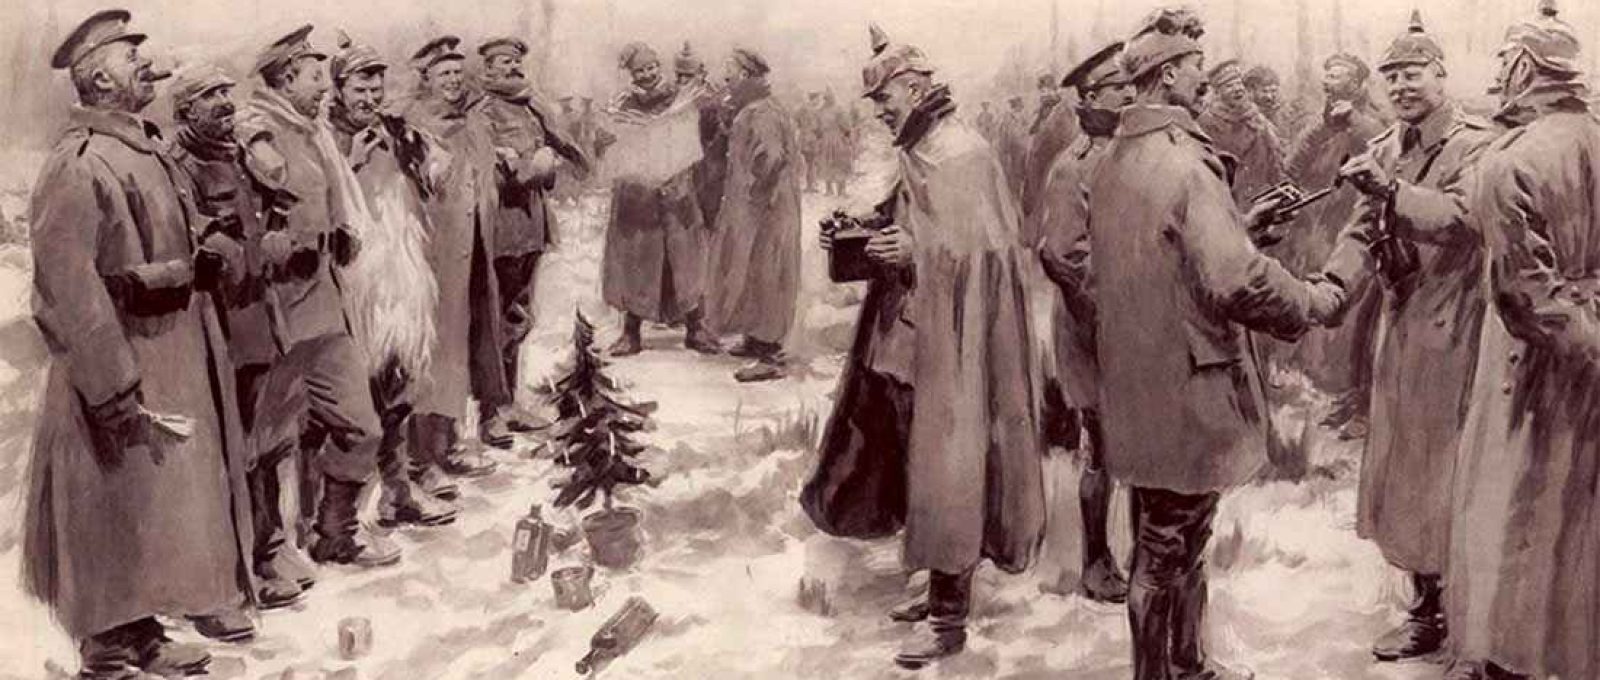 Tropas britânicas e alemãs confraternizam no campo de batalha em dezembro de 1914 (Mary Evans Picture Library/ Encyclopædia Britannica/Alamy).